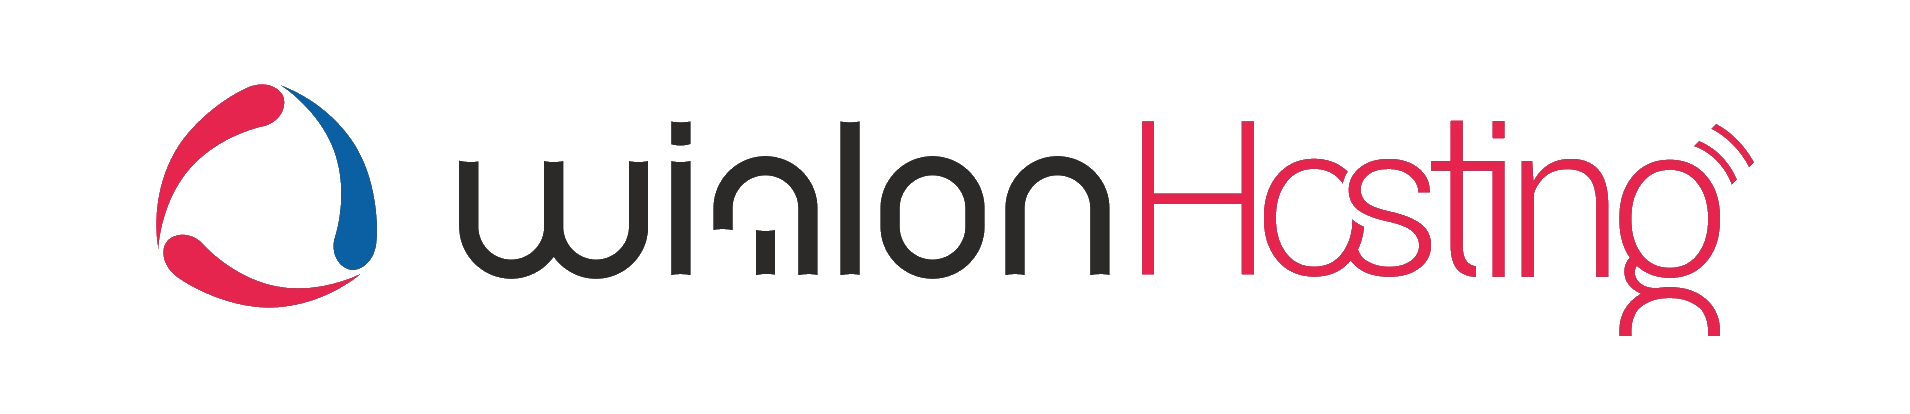 Wialon https hosting